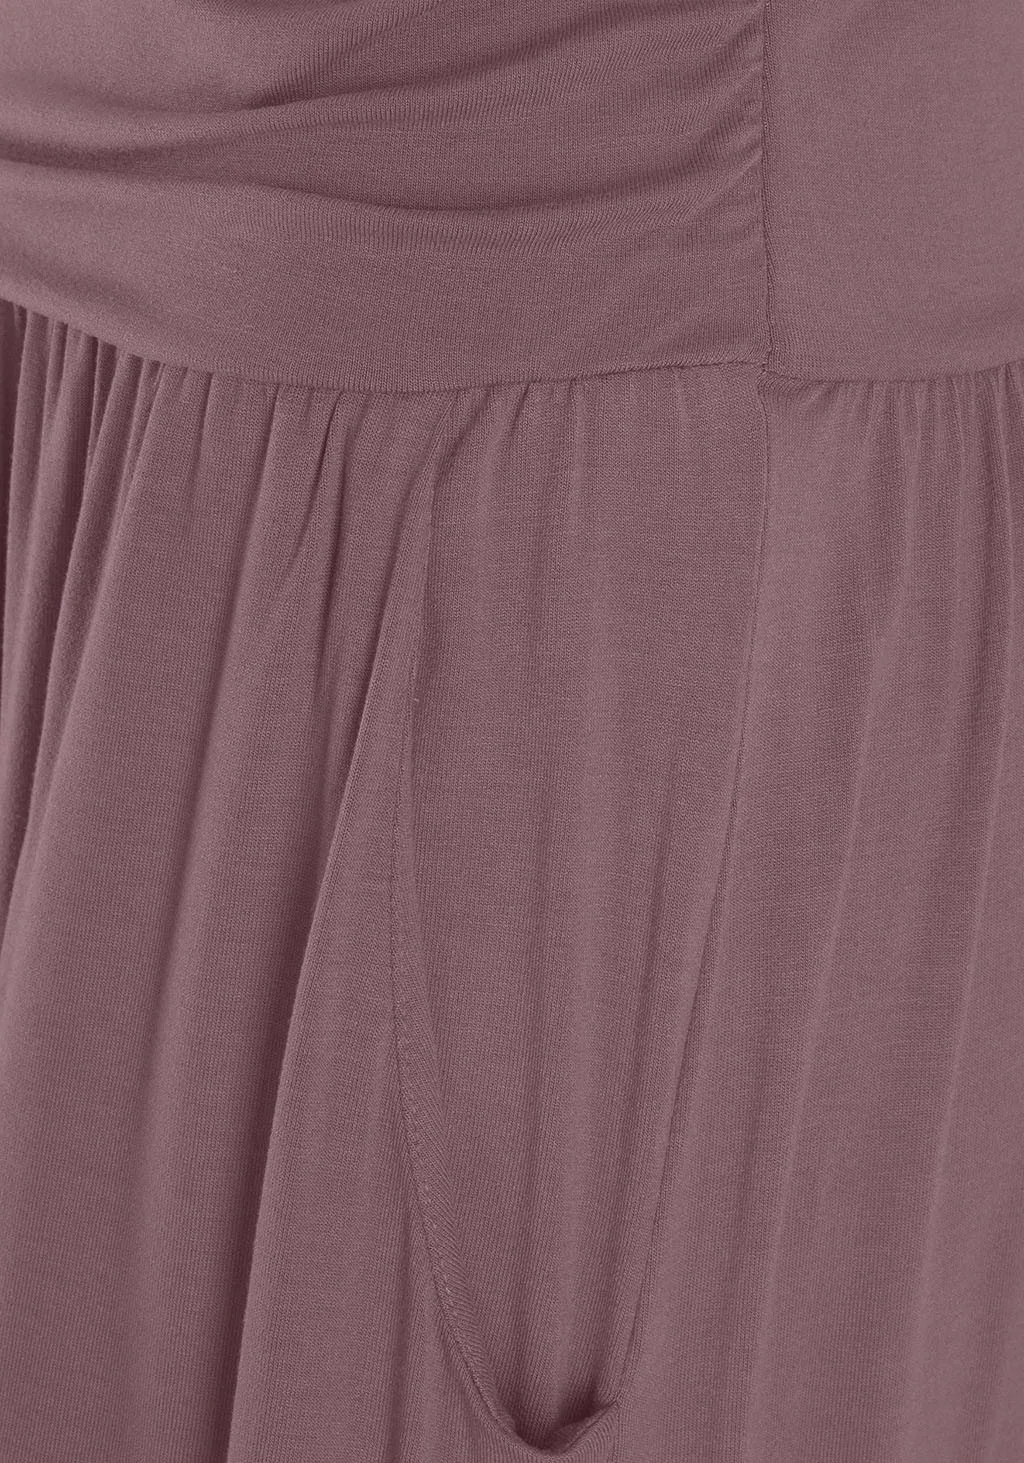 JAYCOSIN женское праздничное длинное платье-бандо с открытыми плечами, летнее однотонное платье из полиэстера, прямое сексуальное платье с вырезом, 10 июня